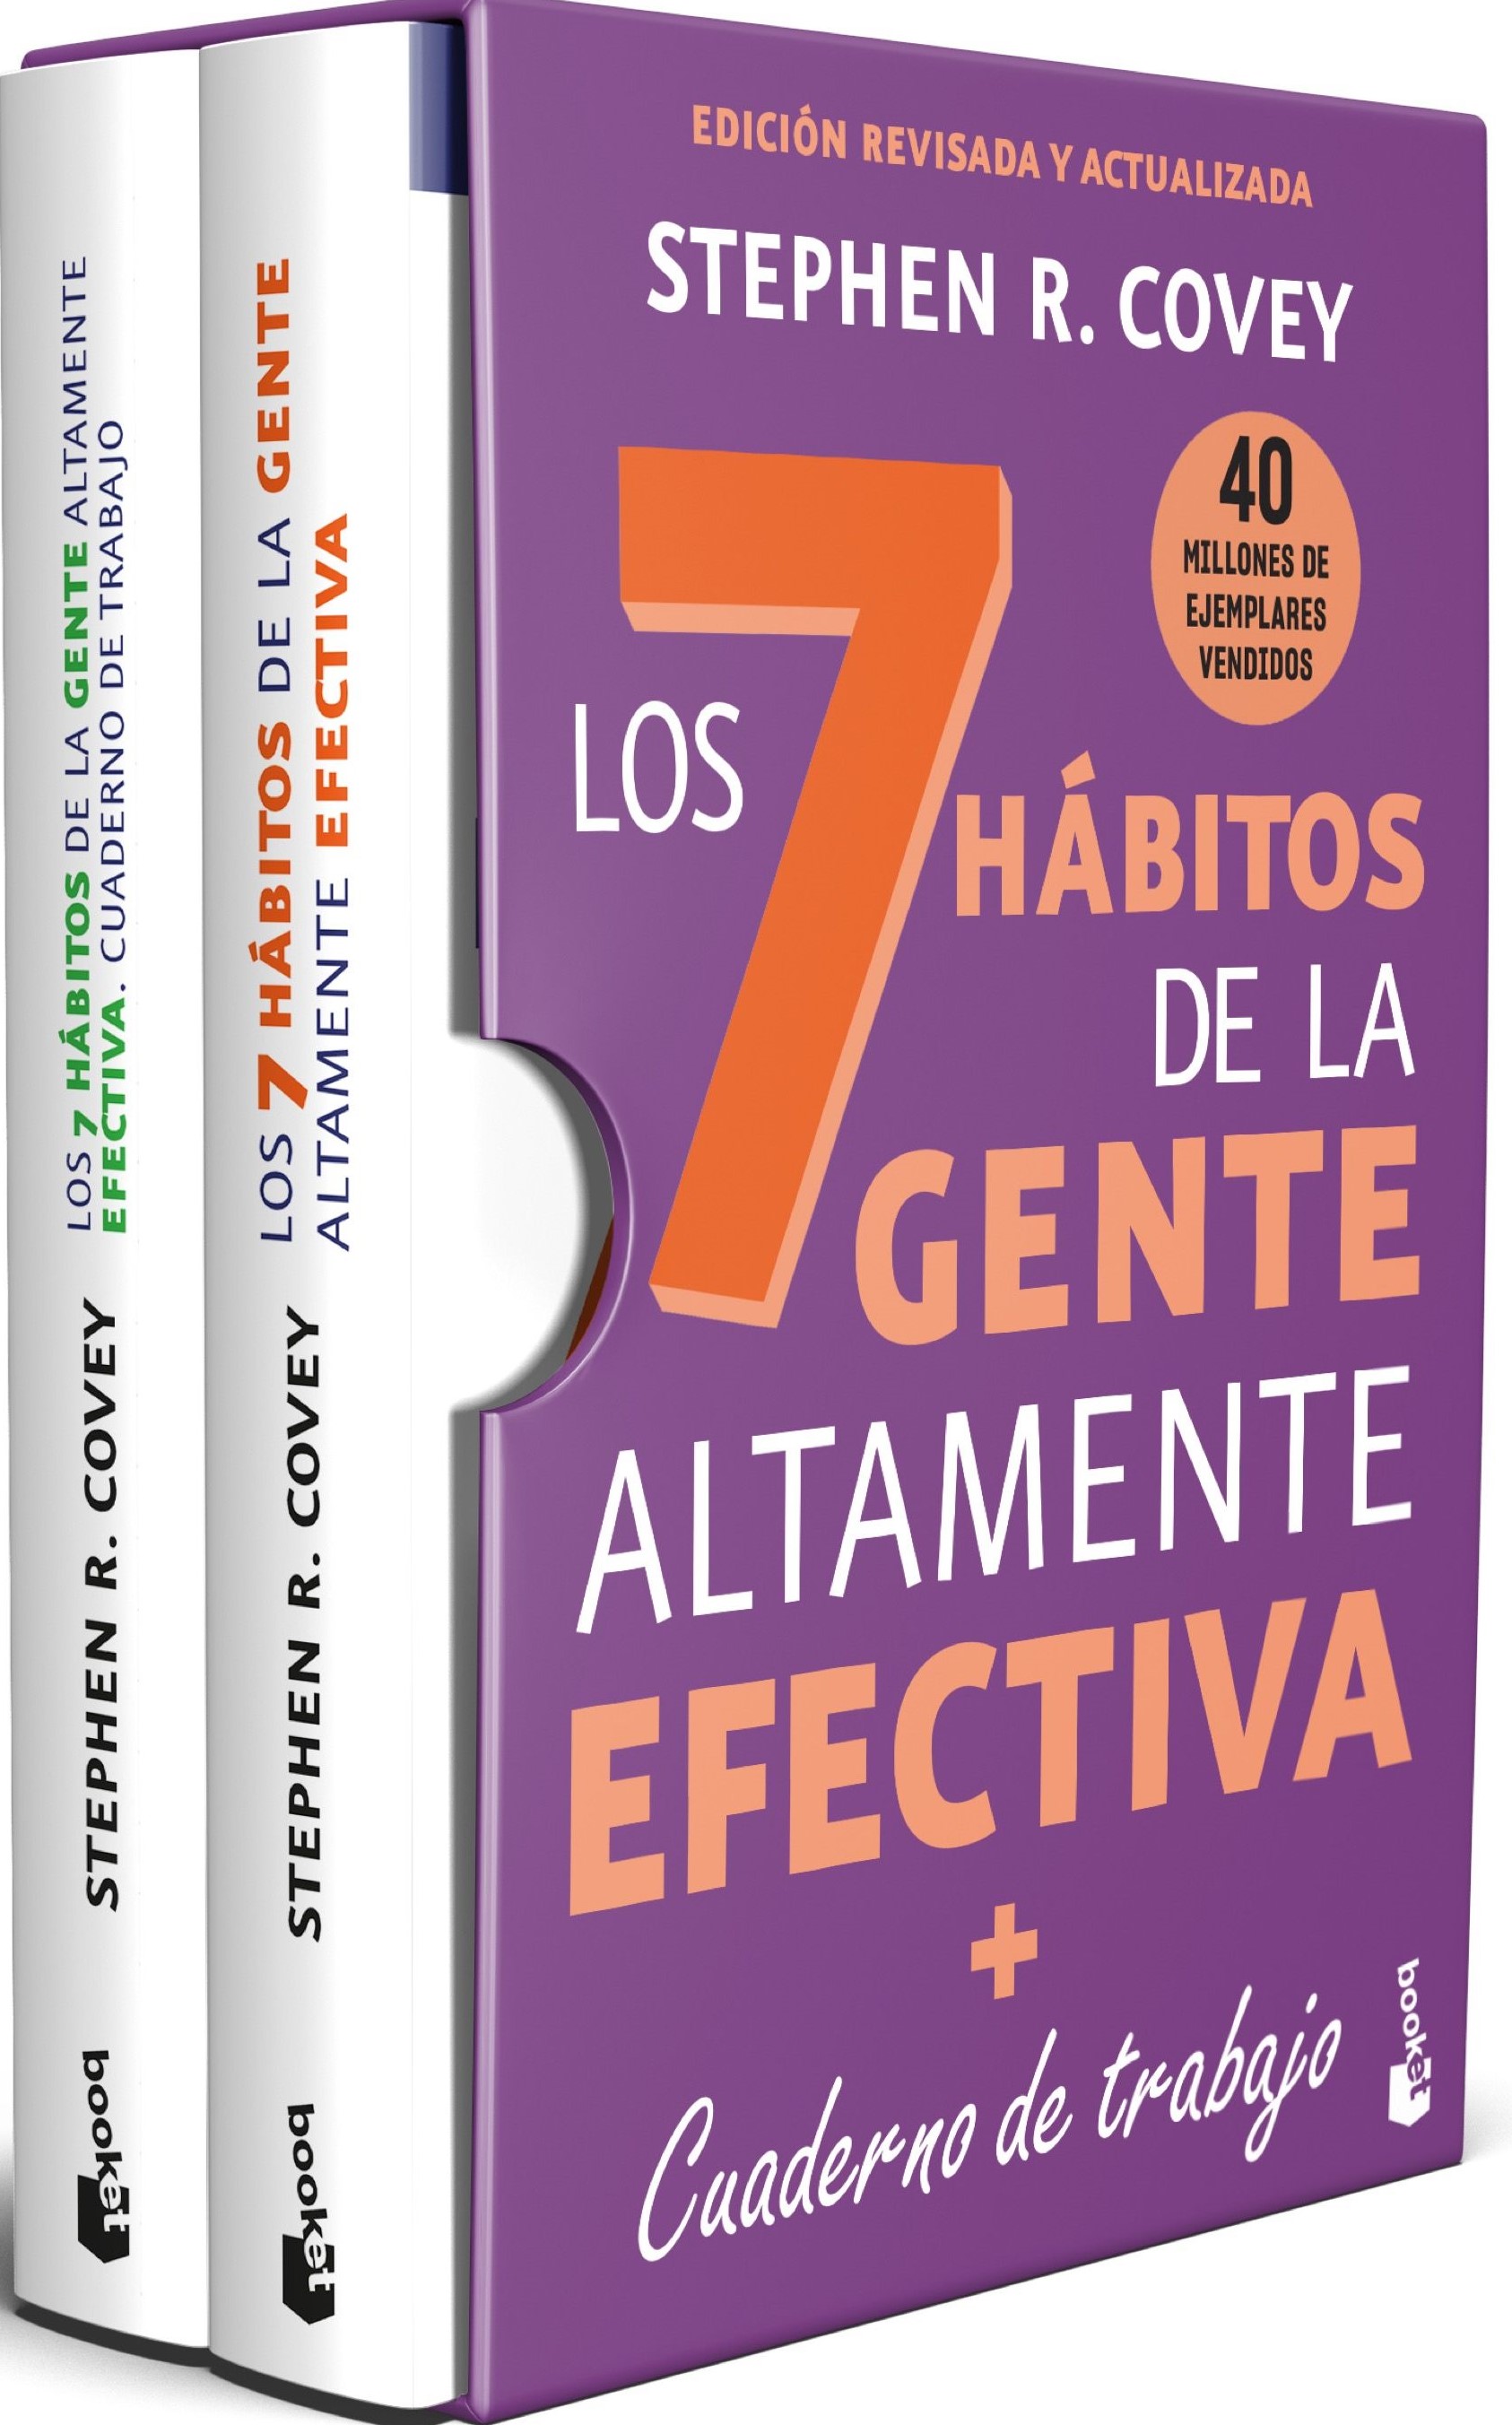 Los 7 hábitos de la gente altamente efectiva + Cuaderno de trabajo. 9788408277088